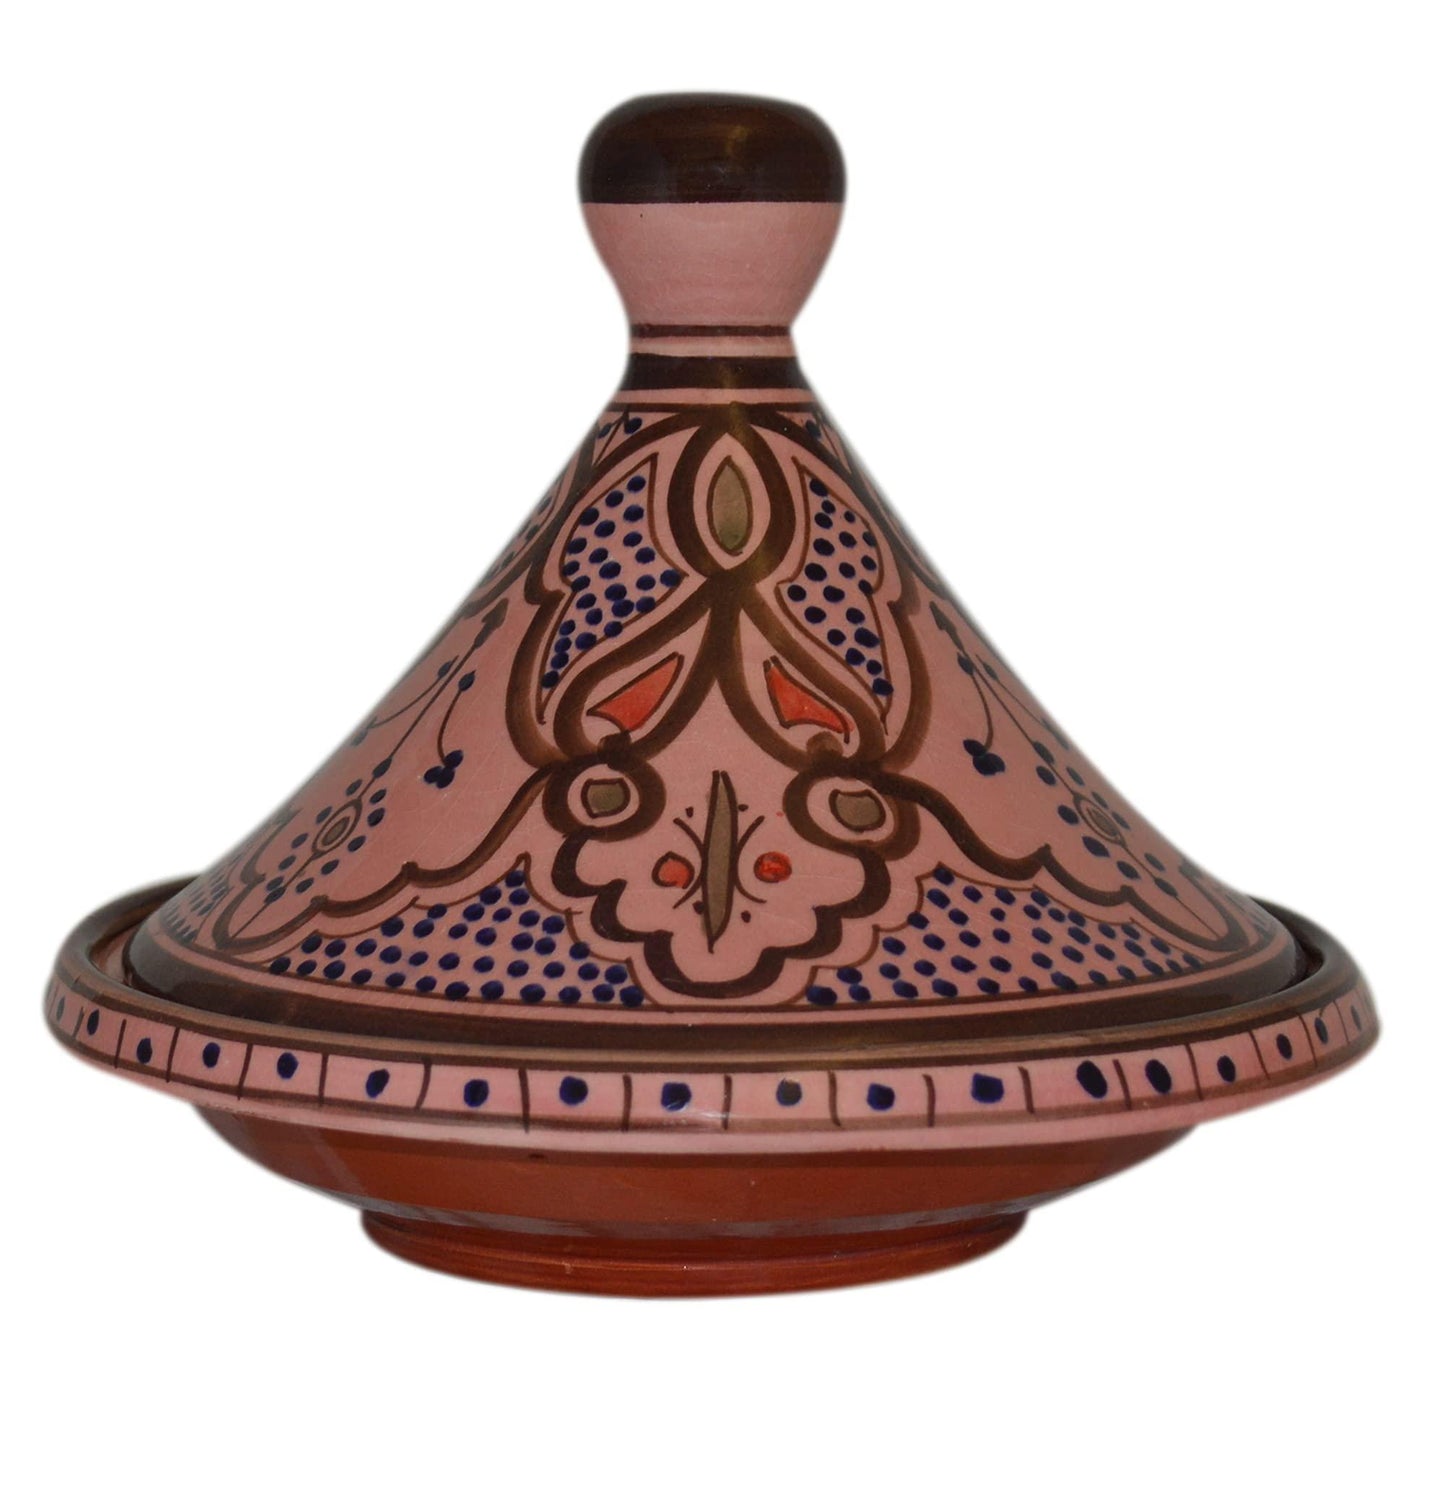 Moroccan Handmade Serving Tagine Exquisite Ceramic With Vivid colors Original Medium 10 inches Across - CookCave